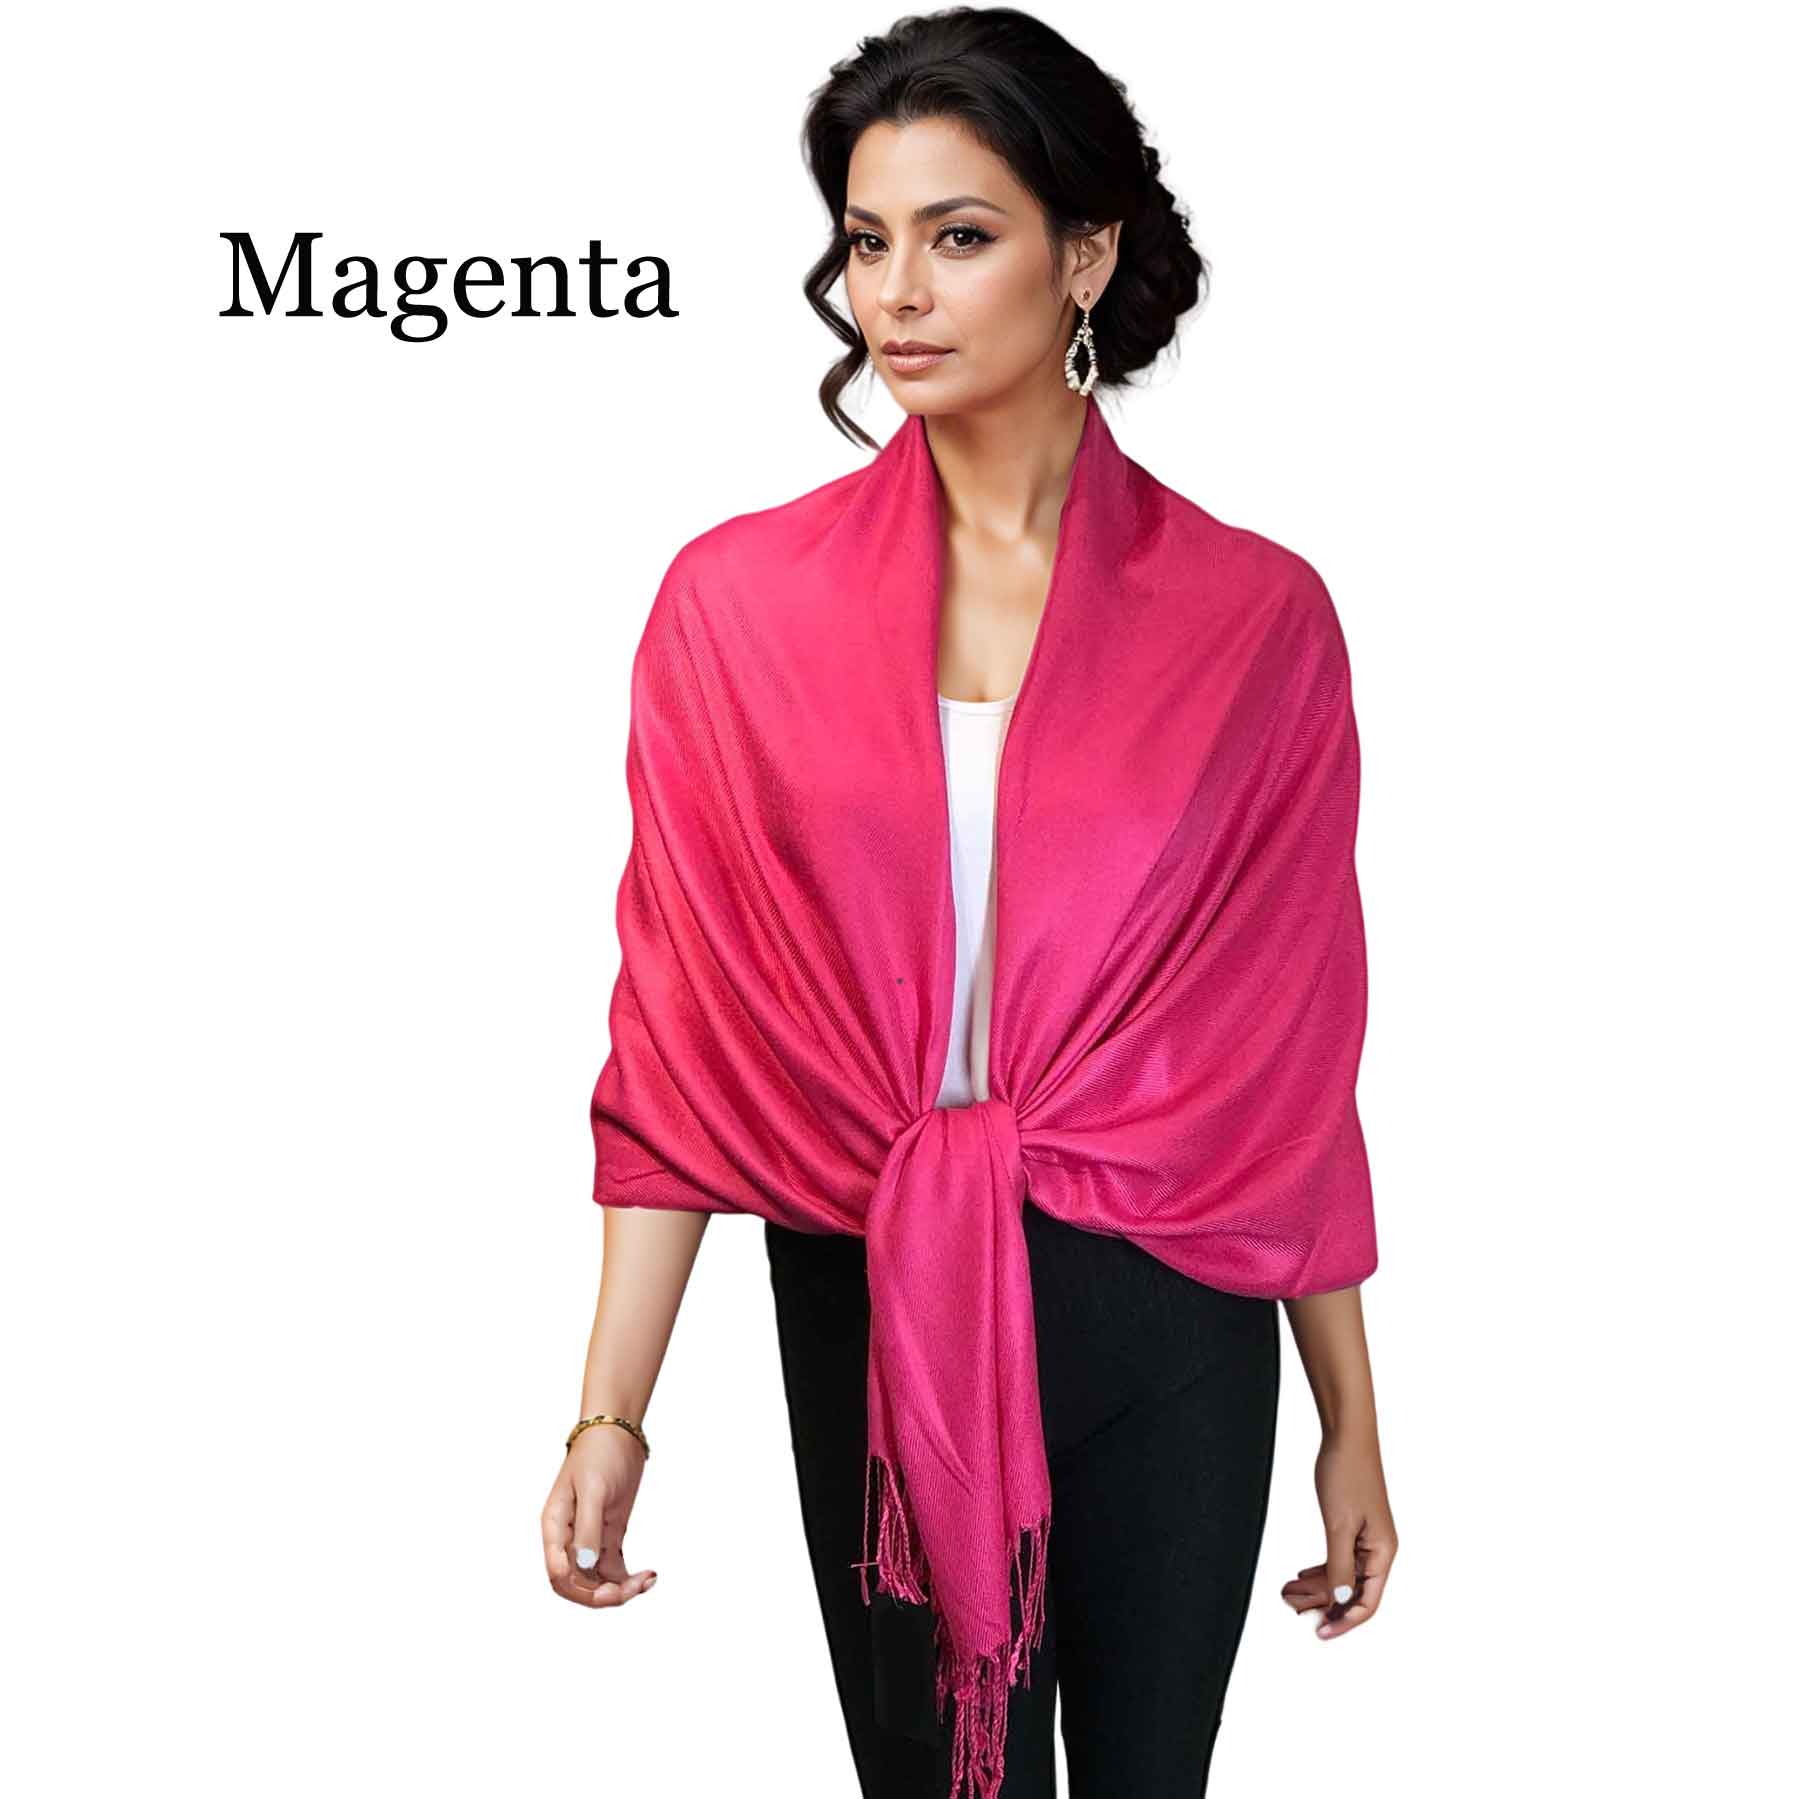 Magenta #23<br>
Pashmina Style Shawl